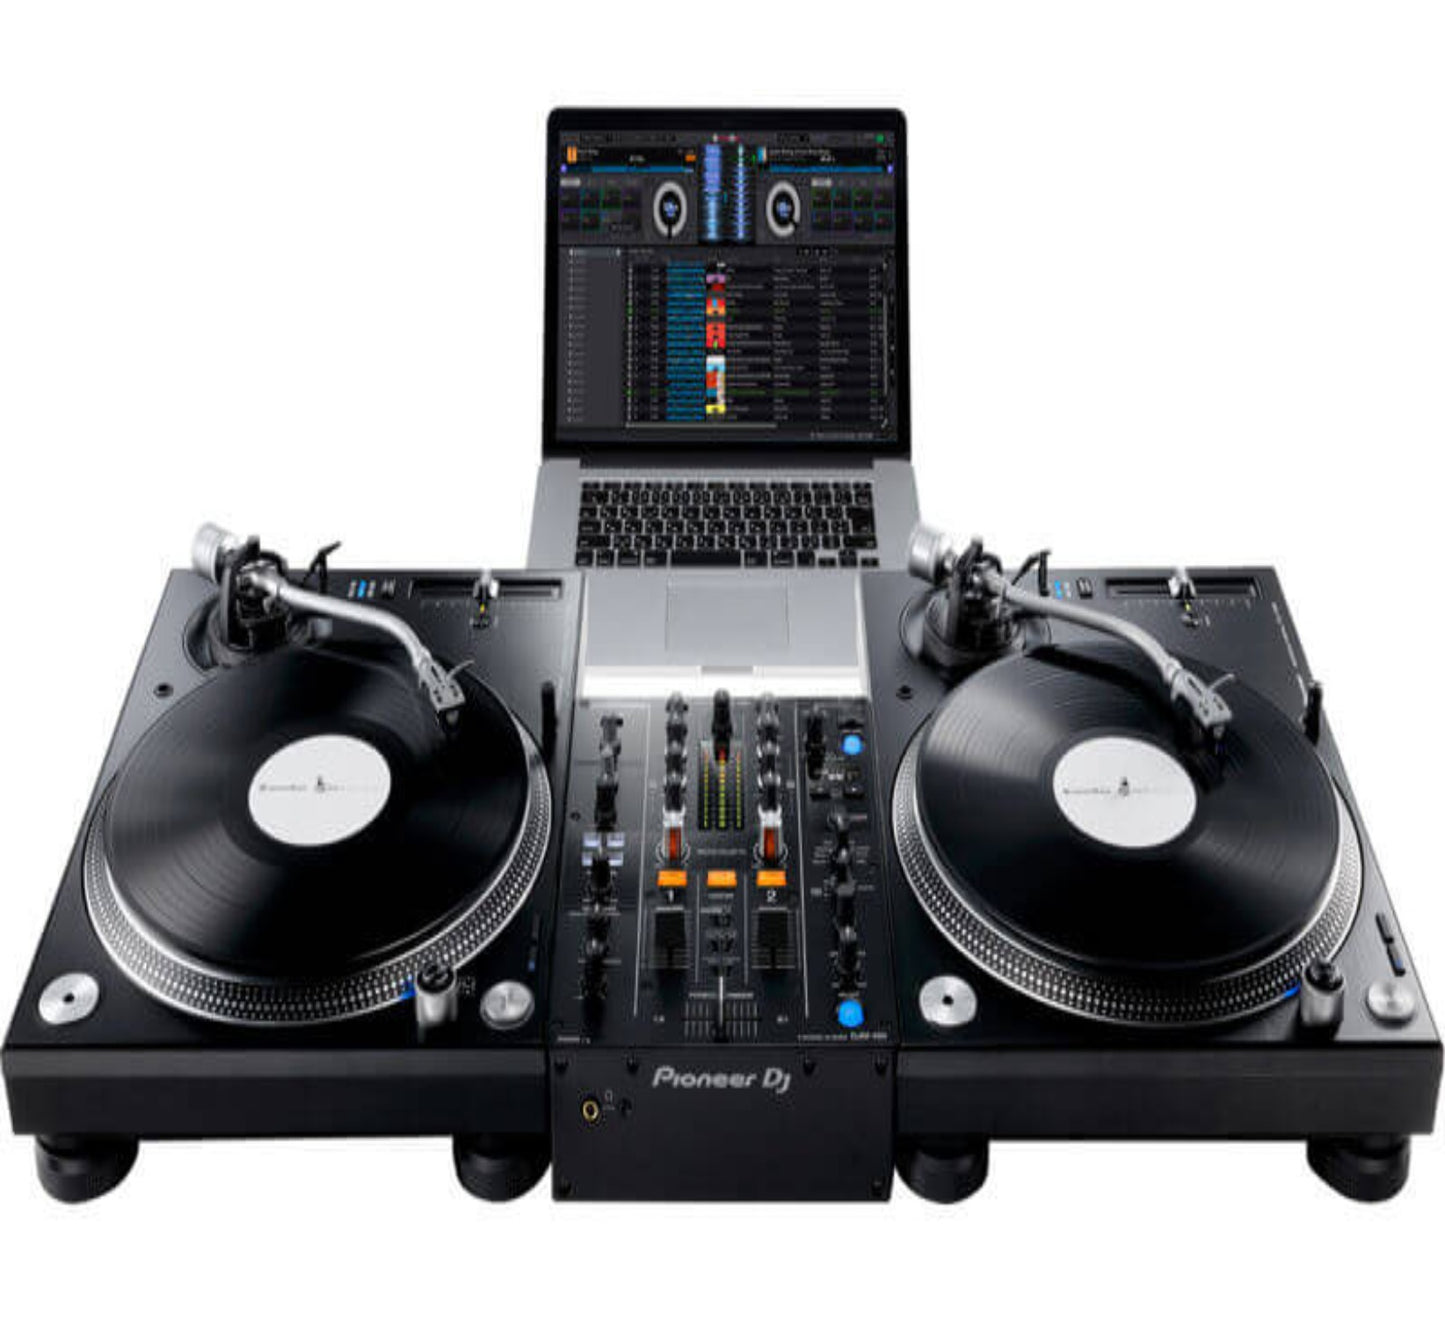 PIONEER DJ DJM-450